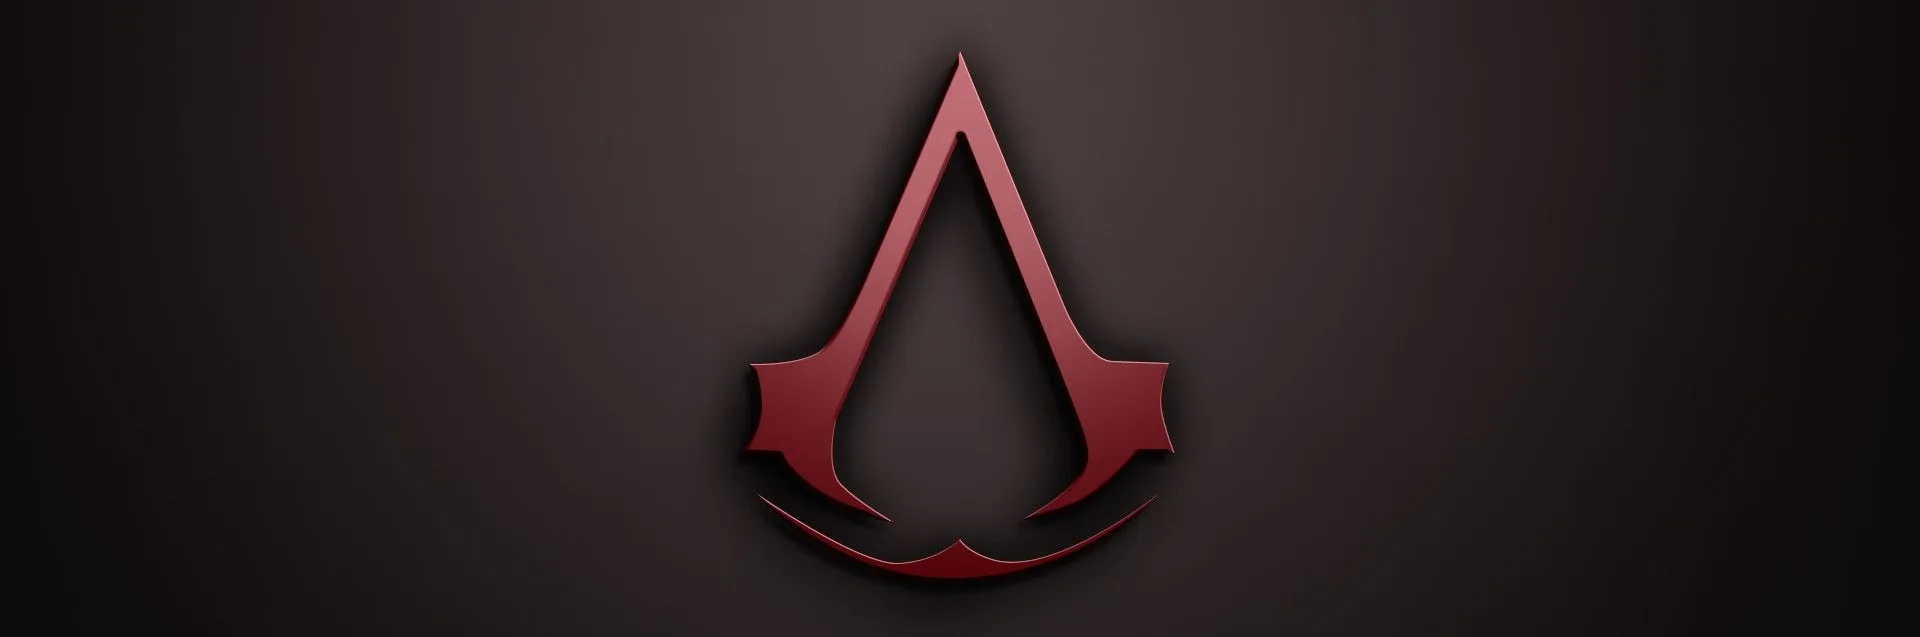 إشاعة : الجزء القادم من Assassin's Creed سيصدر في 2022